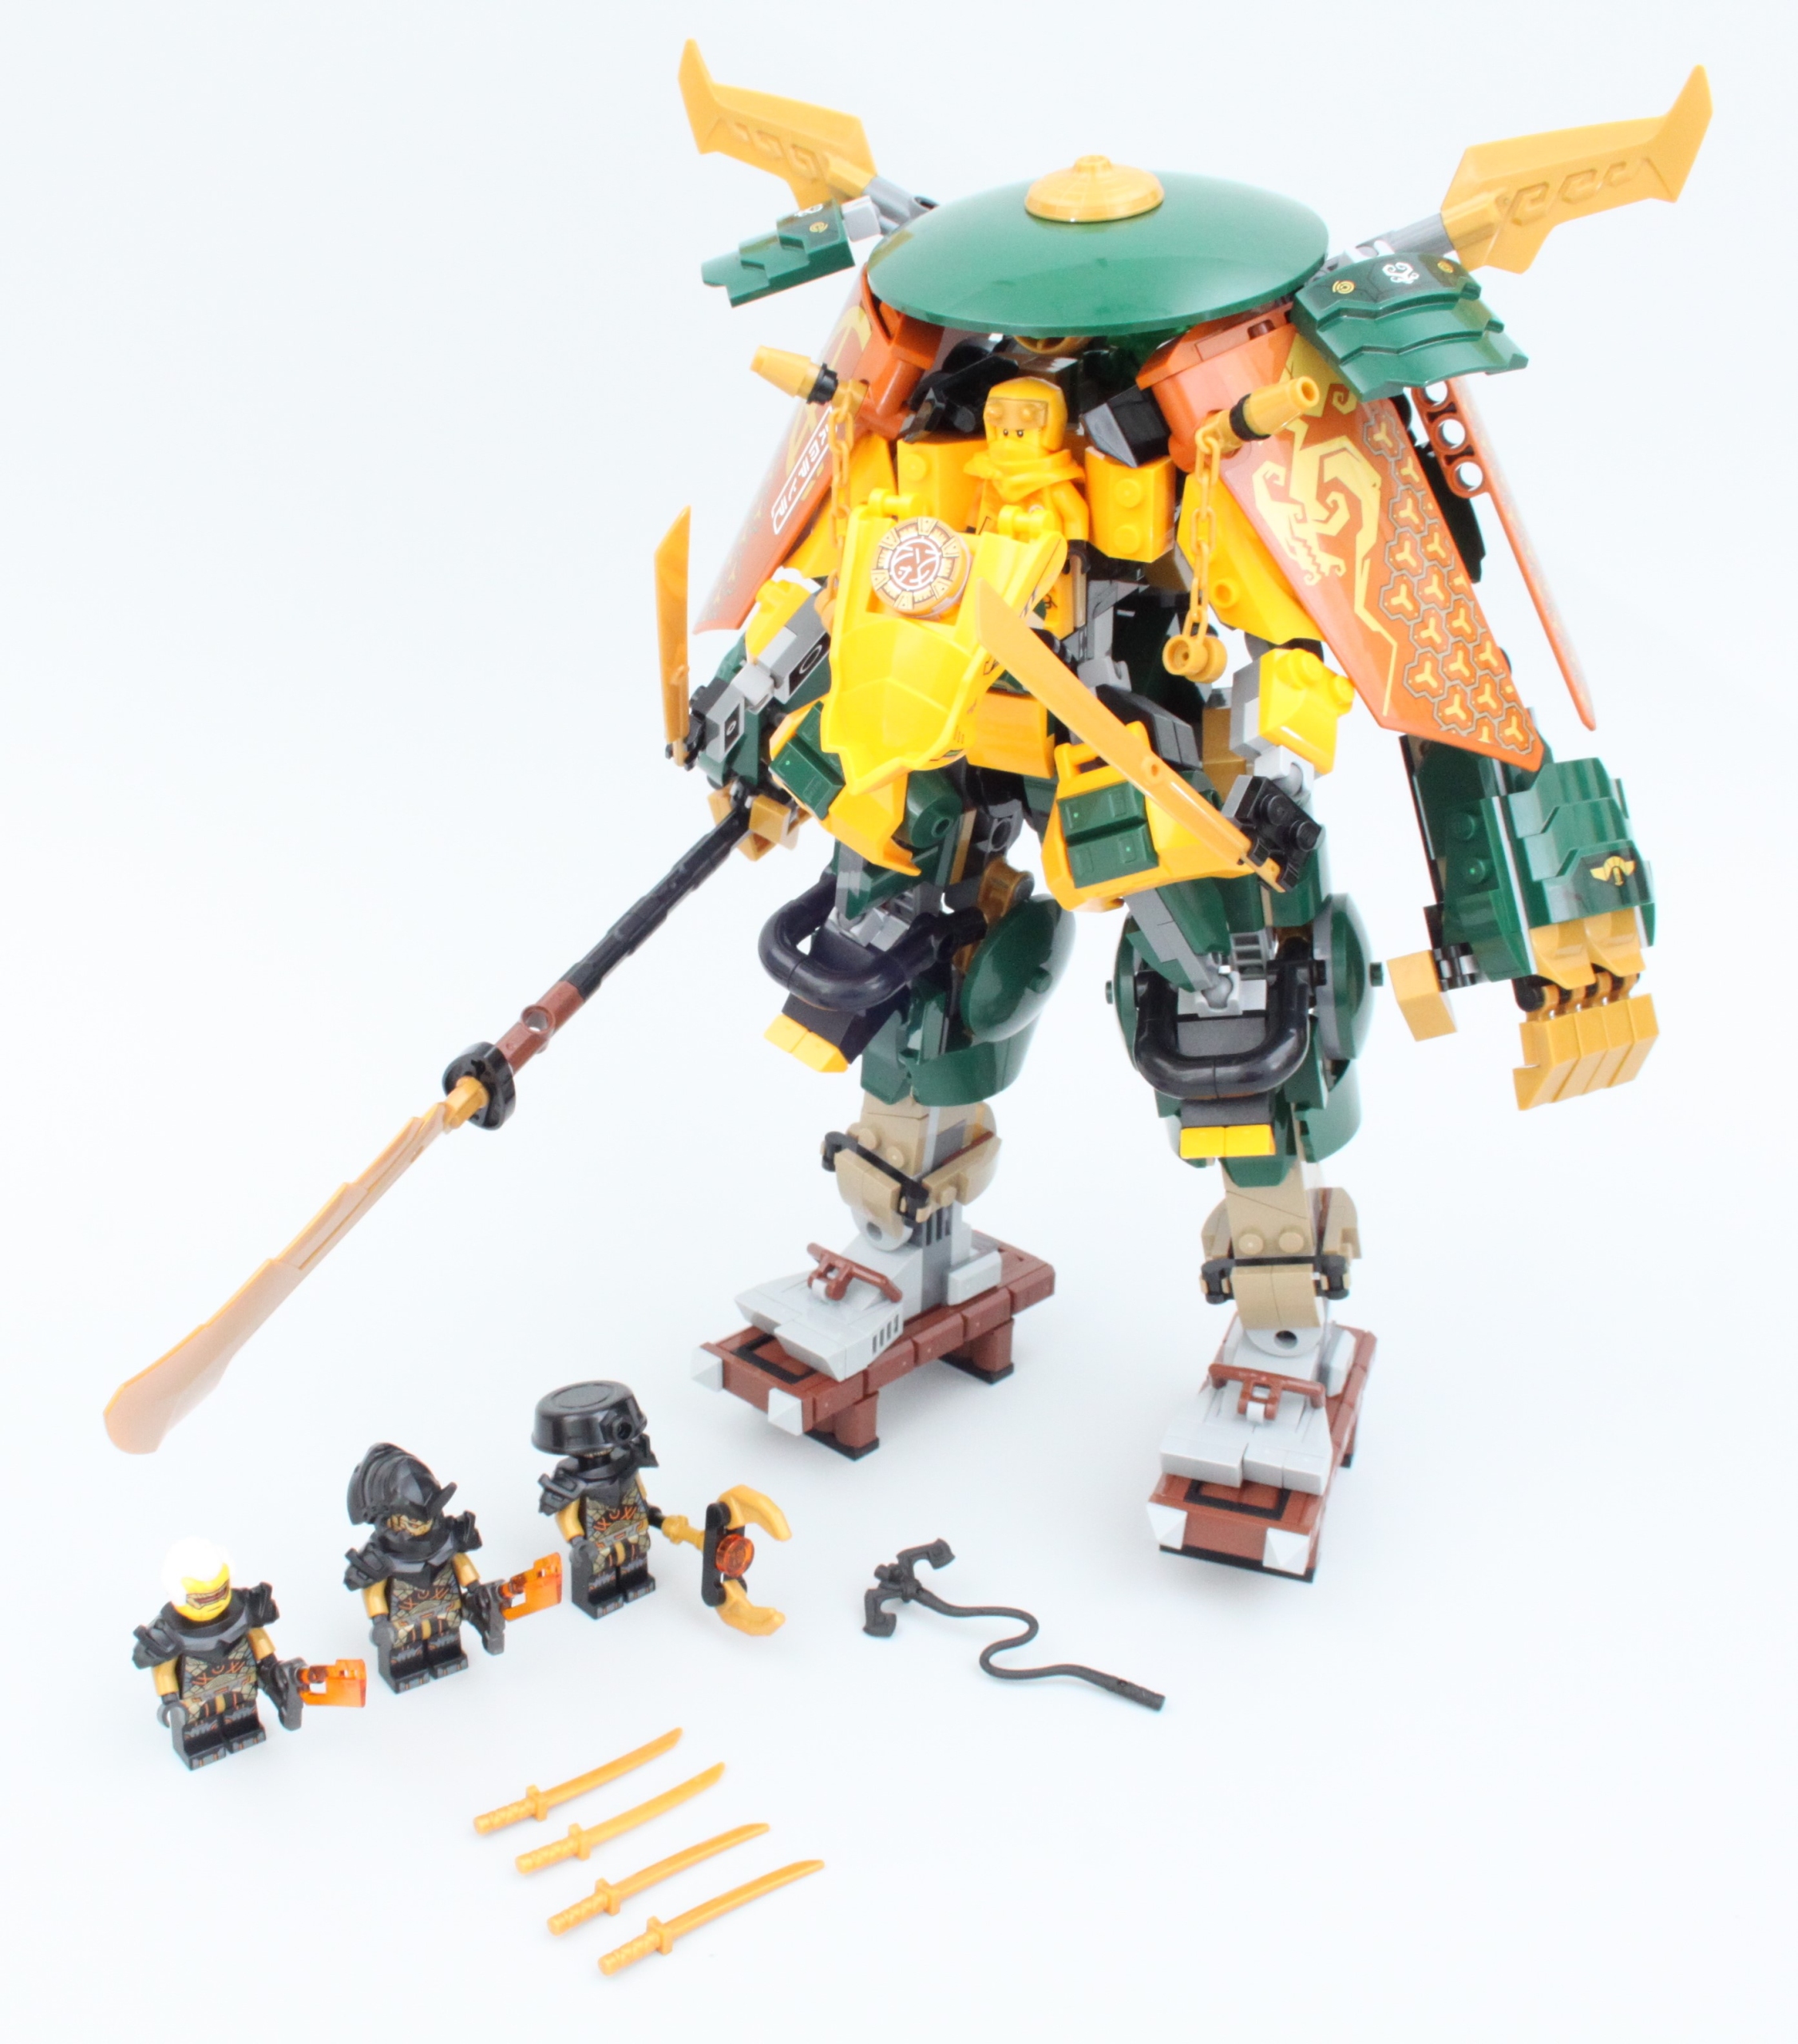 LEGO NINJAGO 71794 - L'Équipe de Robots des Ninjas Lloyd et Arin